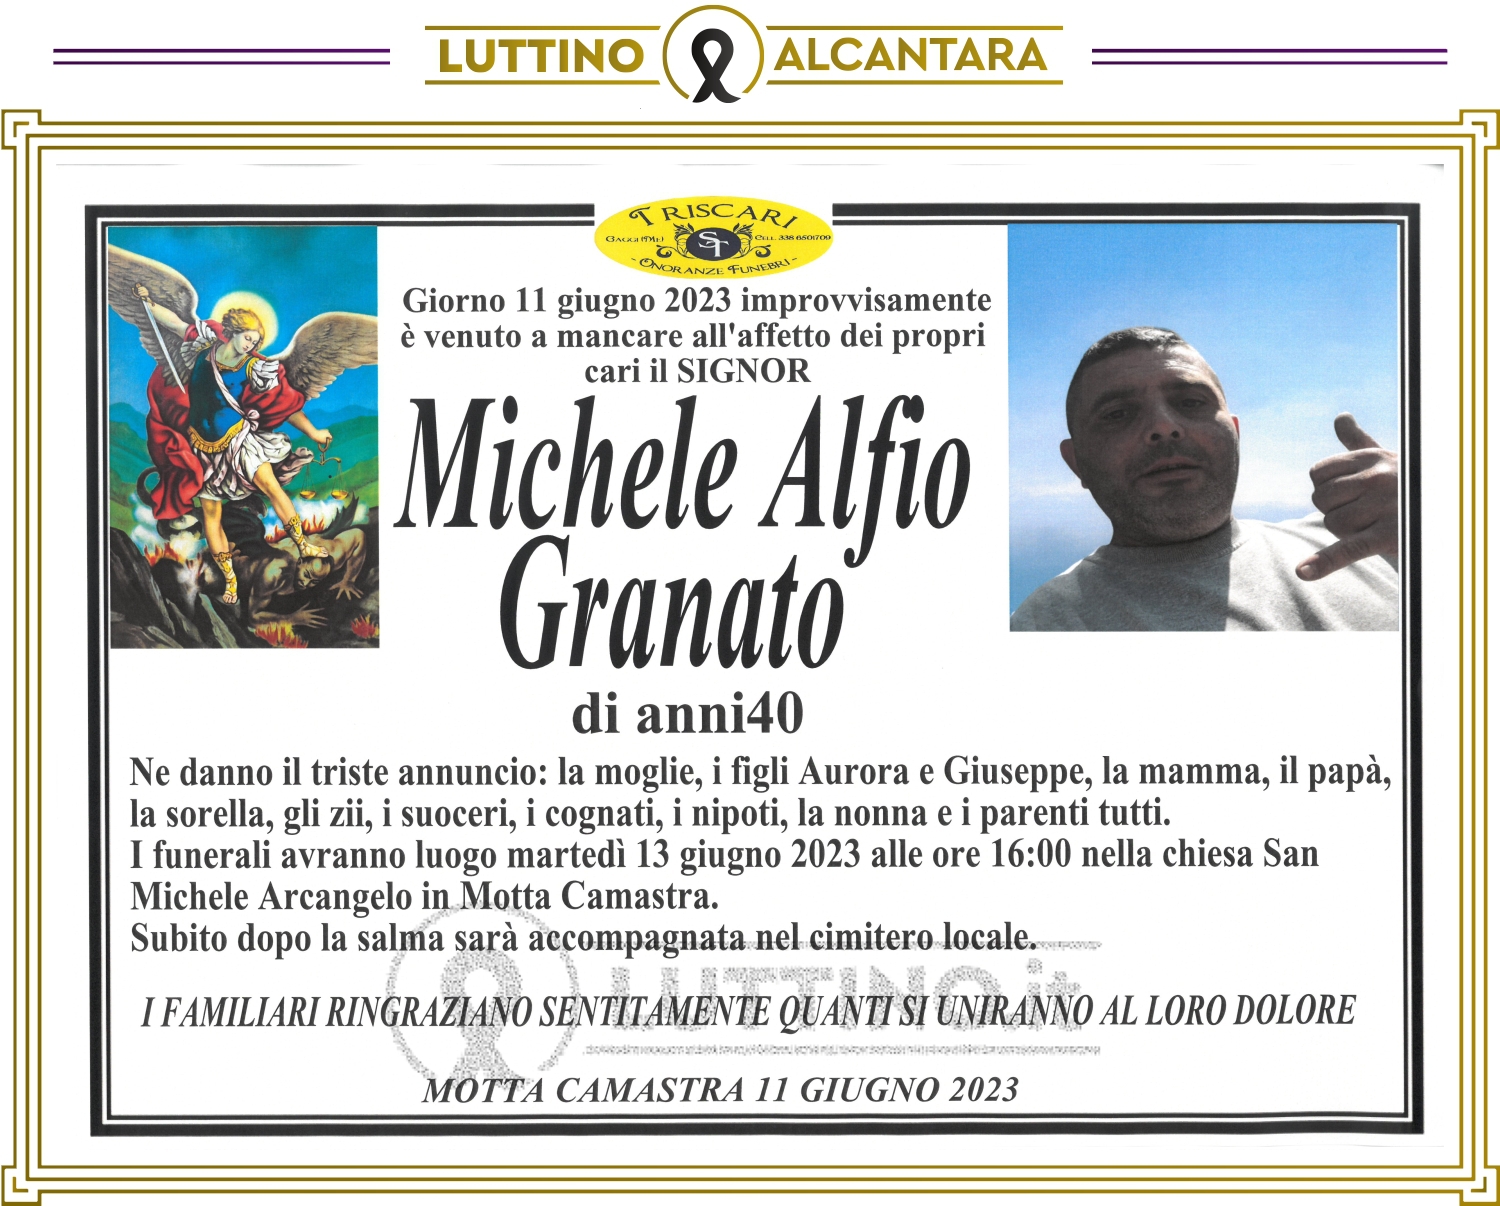 Michele Alfio  Granato 